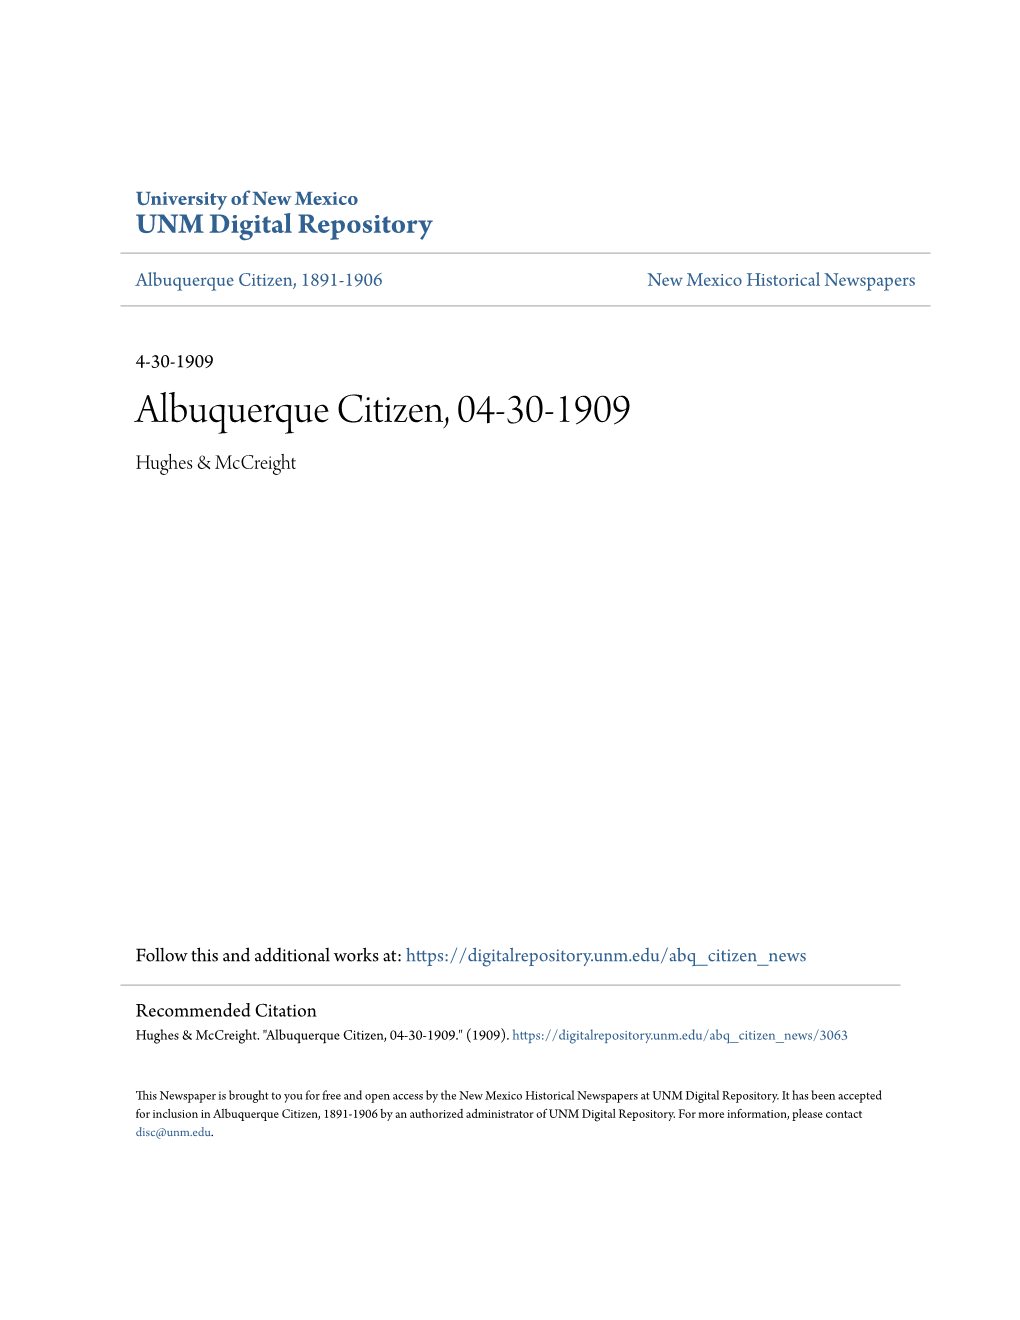 Albuquerque Citizen, 04-30-1909 Hughes & Mccreight